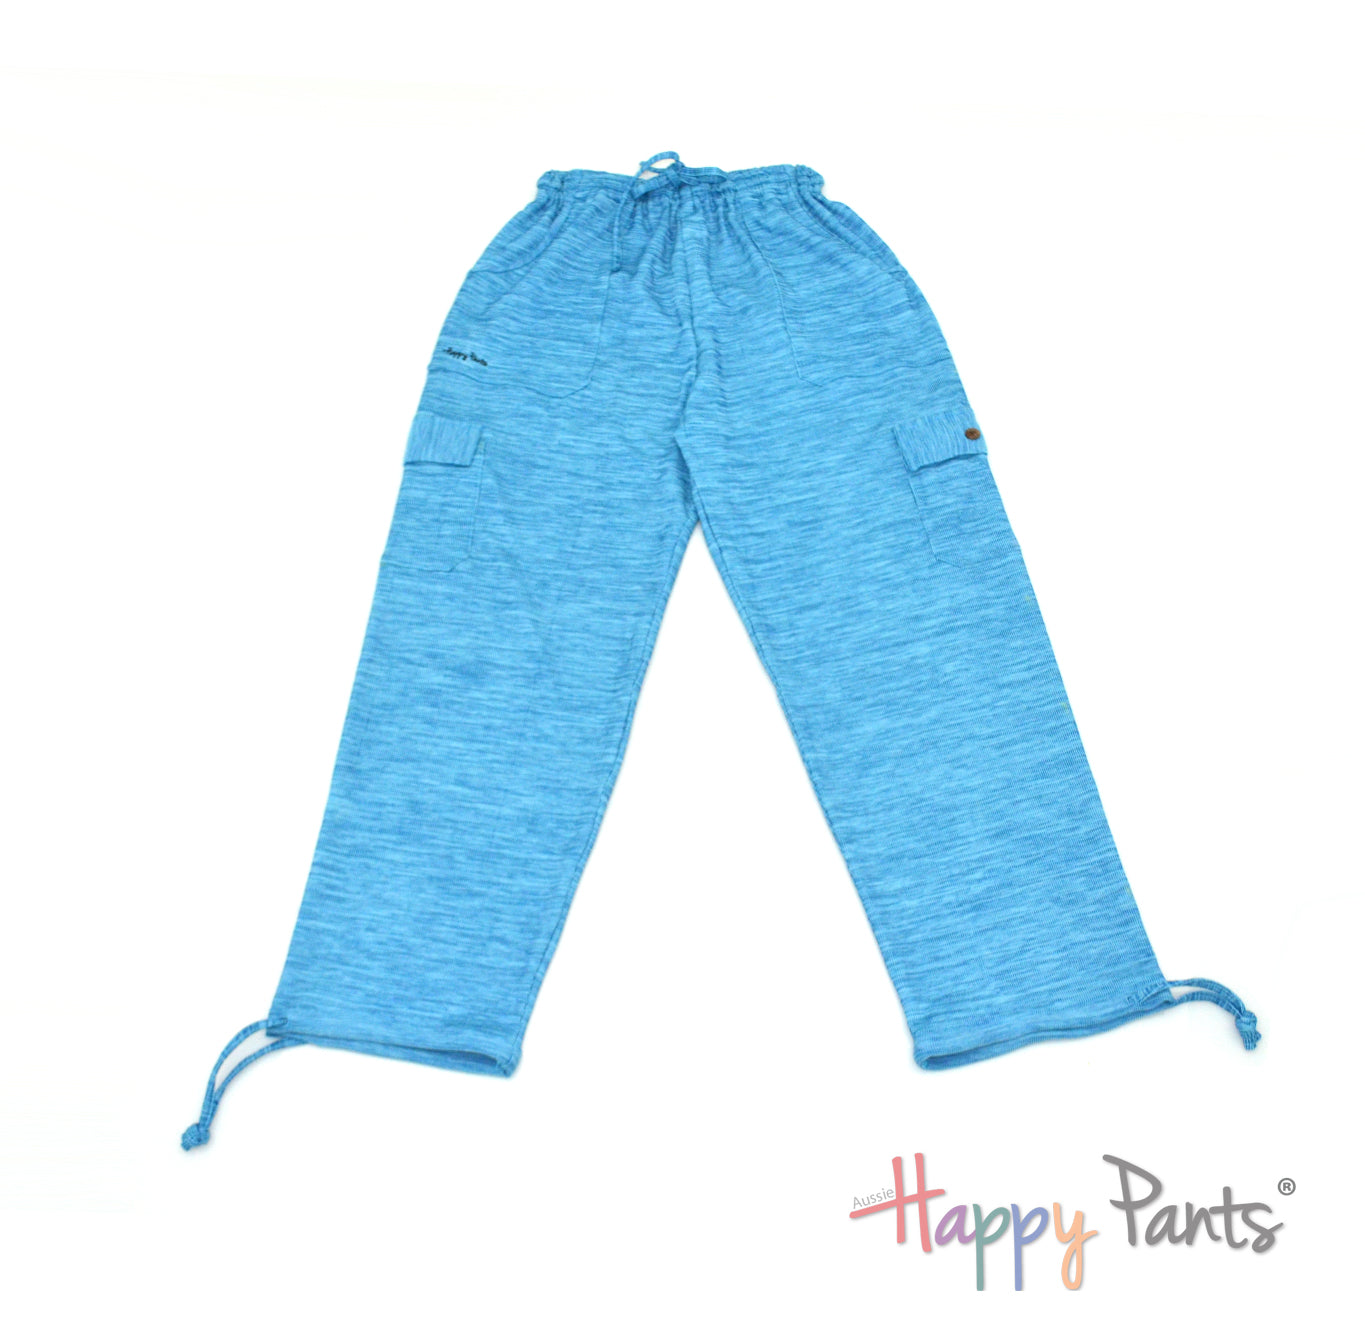 Blue aqua Men pants elastic waist summer Happy Pants fun and colourful clothes